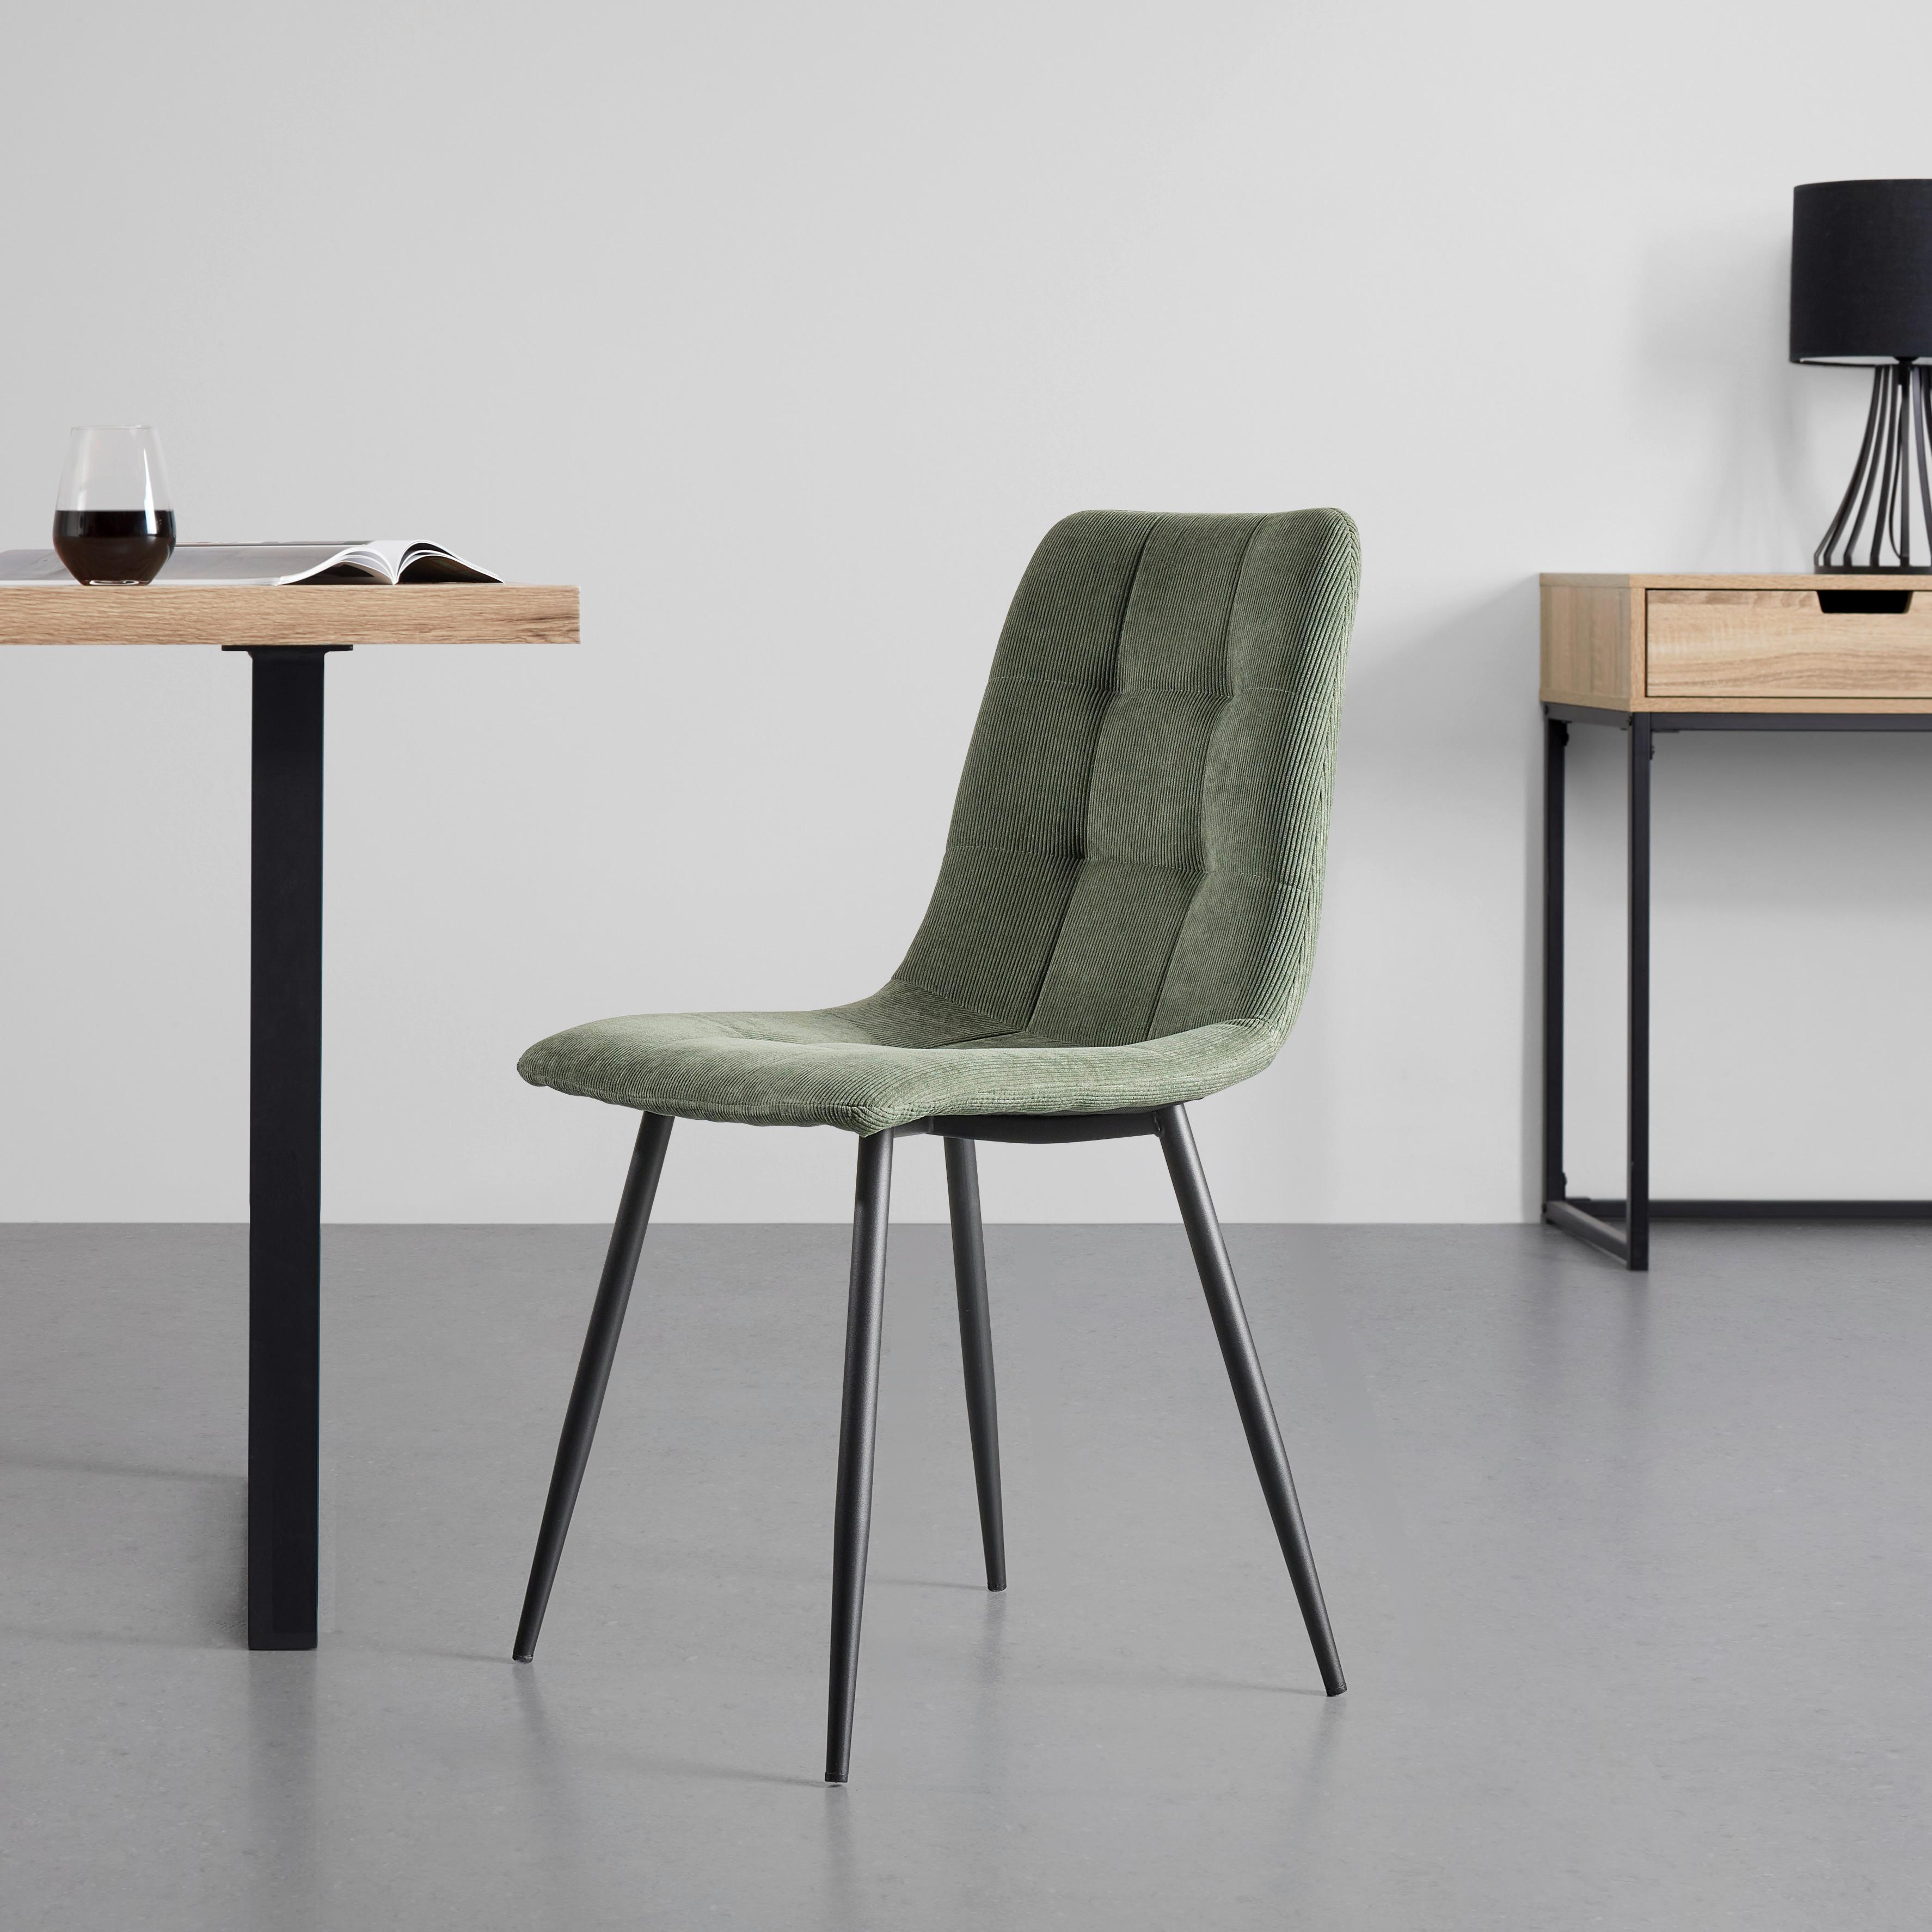 Židle Nino - černá/zelená, Moderní, kov/dřevo (45/87/57cm) - Modern Living